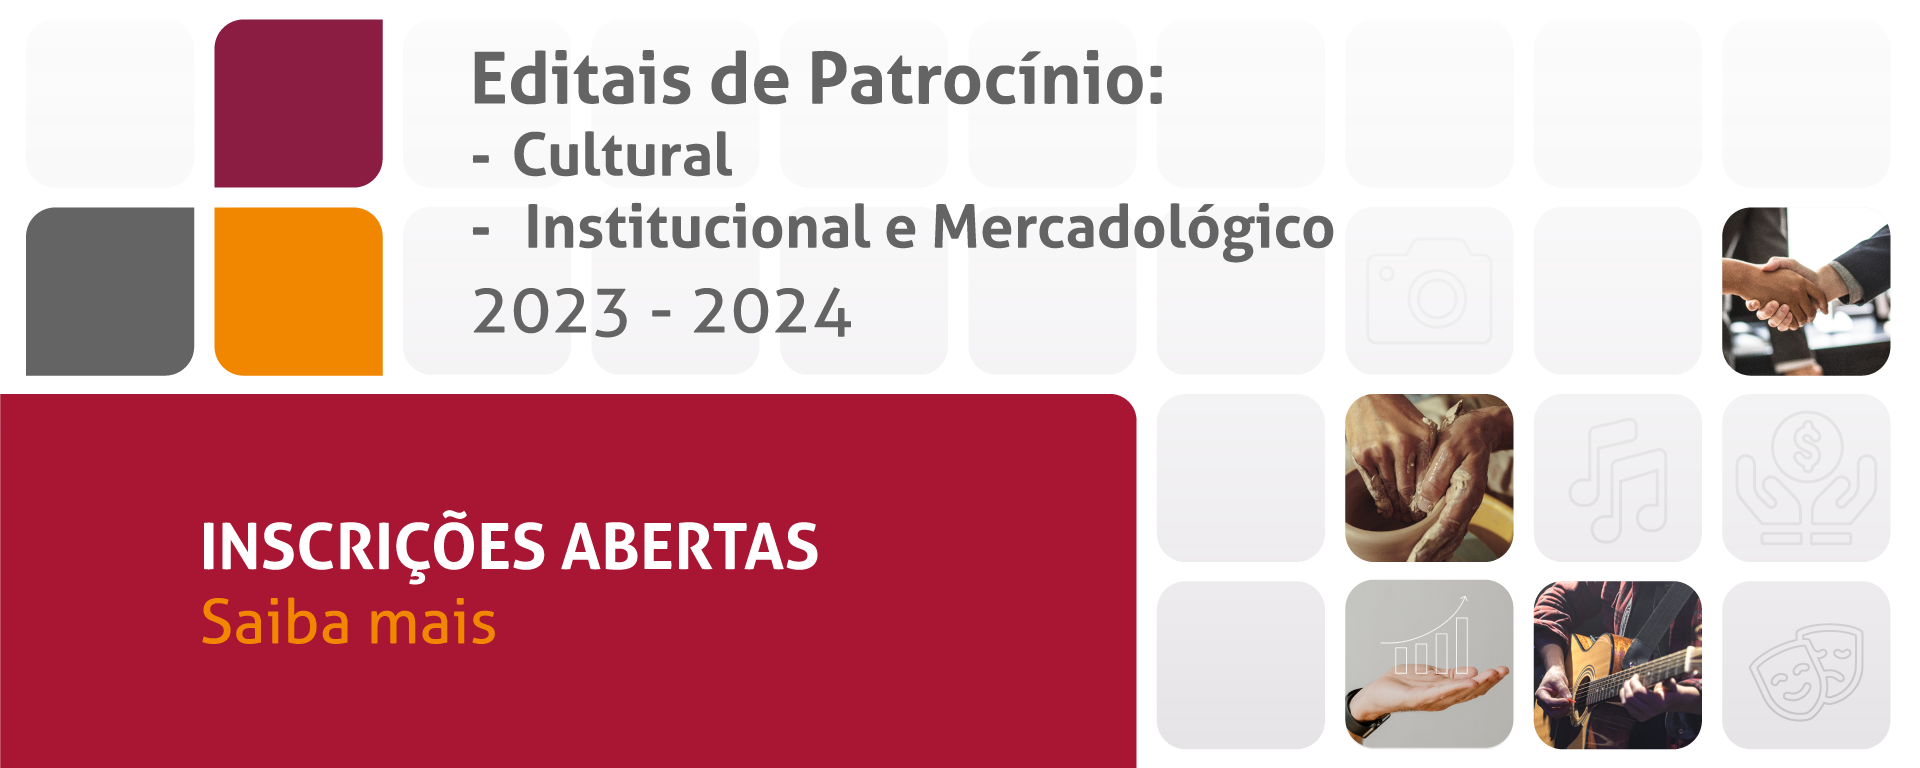 Editais de Patrocínio: Cultural e Institucional e Mercadológico. 2023-2024. Inscrições a partir de 05/12/2022. Saiba mais.